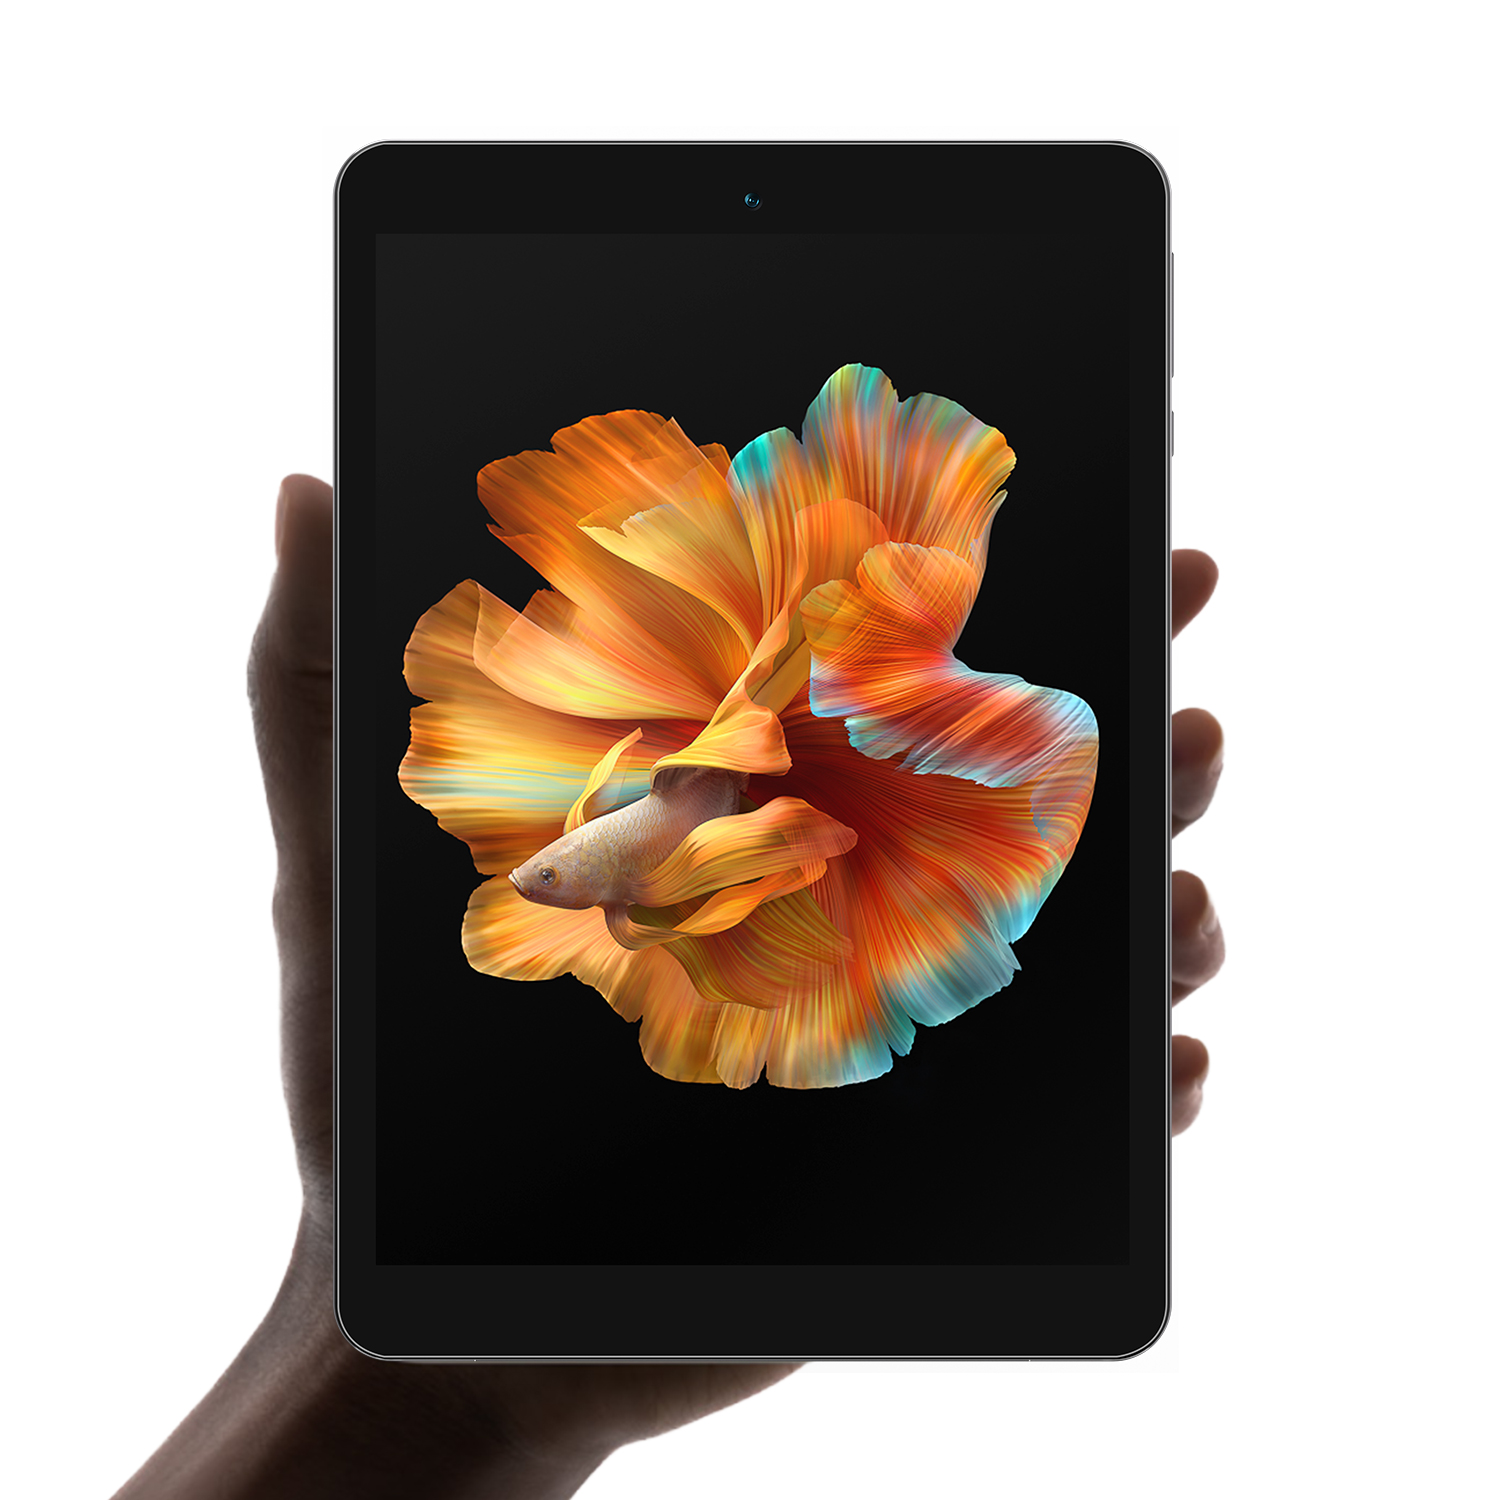 Goditi vari divertimenti in una mano!Il nuovo tablet trendy I8 Mini da 7,9' di BMAX sarà presto disponibile!